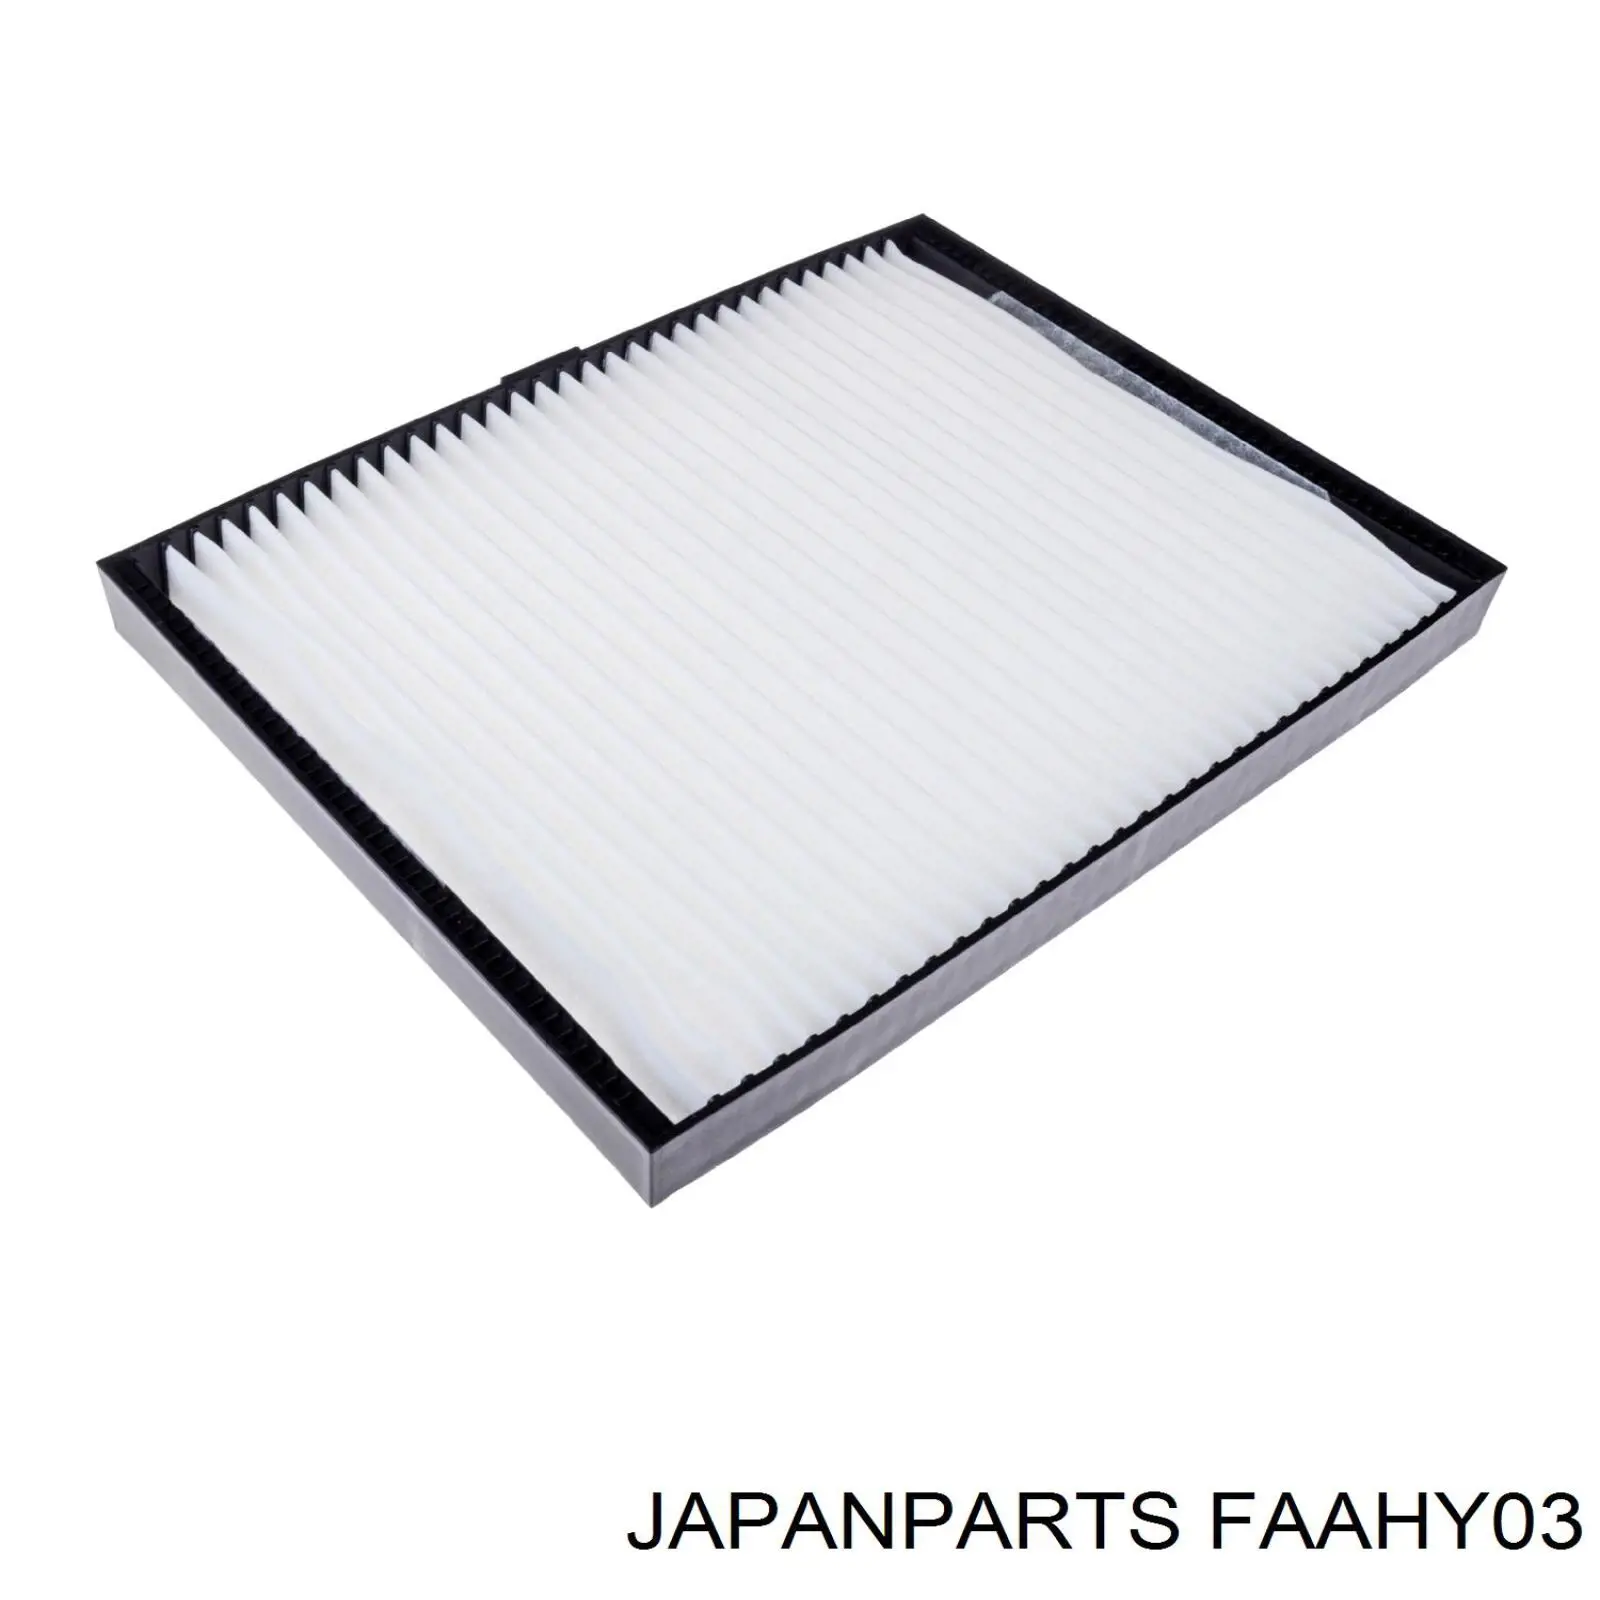 FAA-HY03 Japan Parts filtro habitáculo